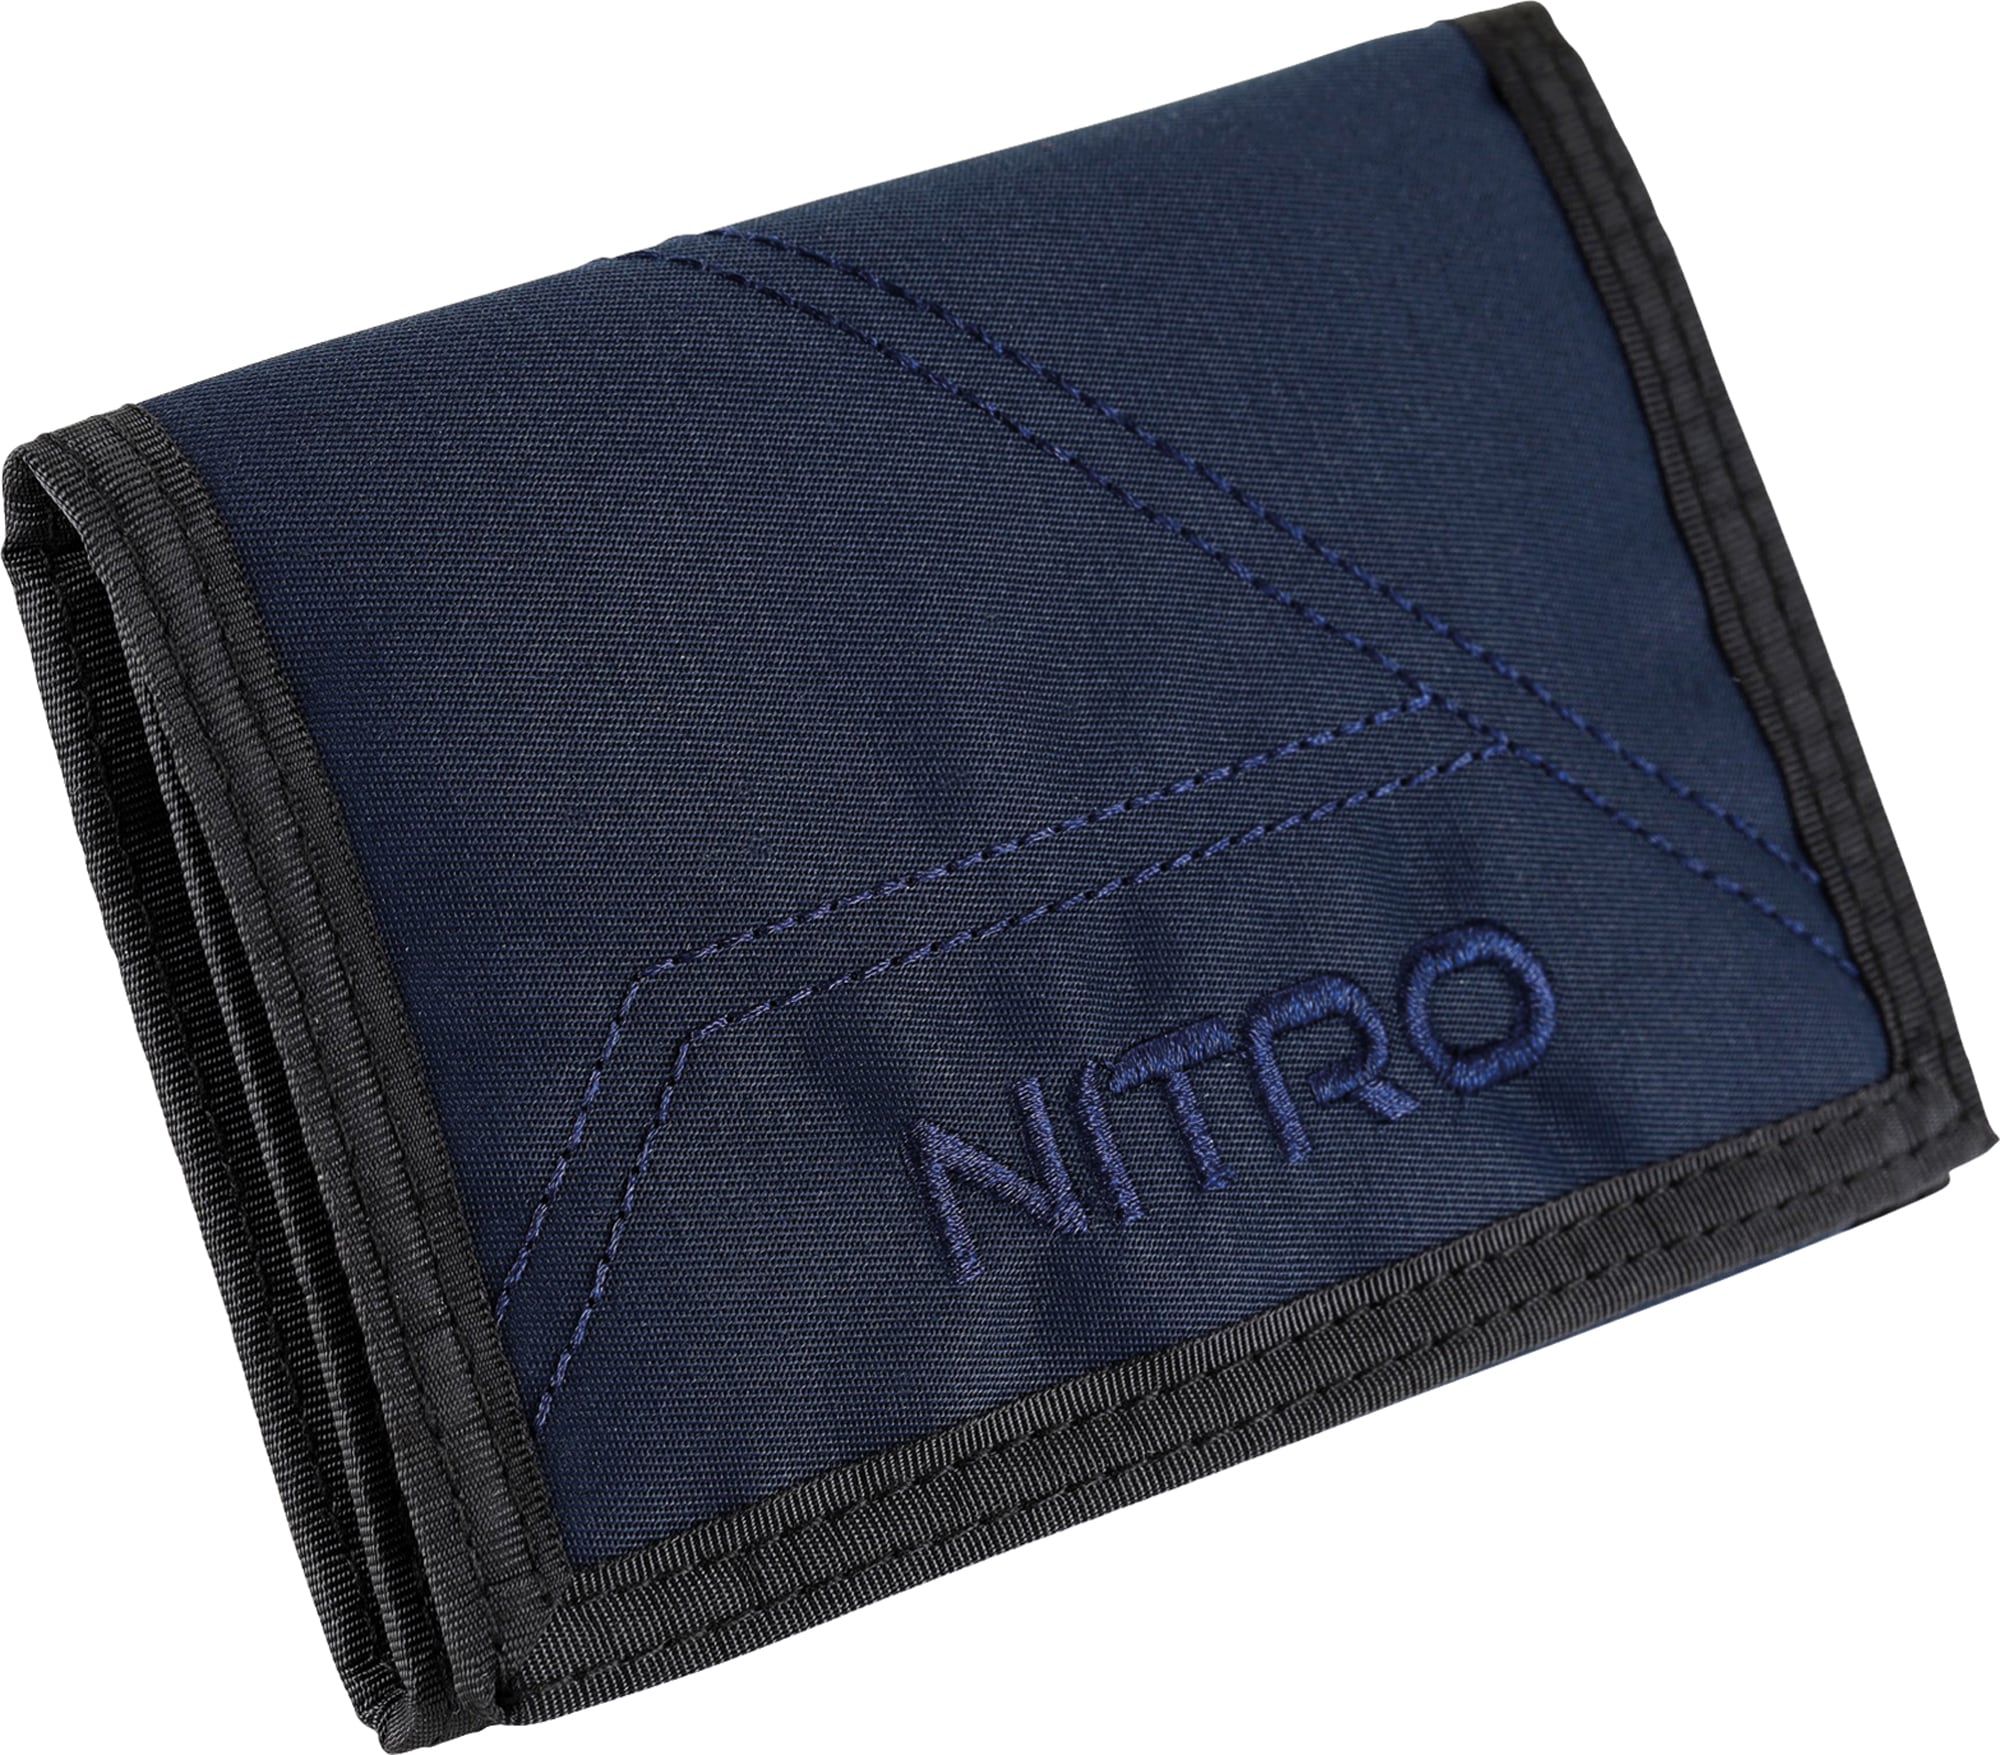 NITRO Geldbörse "Wallet", Geldbeutel, Wallet, Portmonaie, Etui für Scheine günstig online kaufen